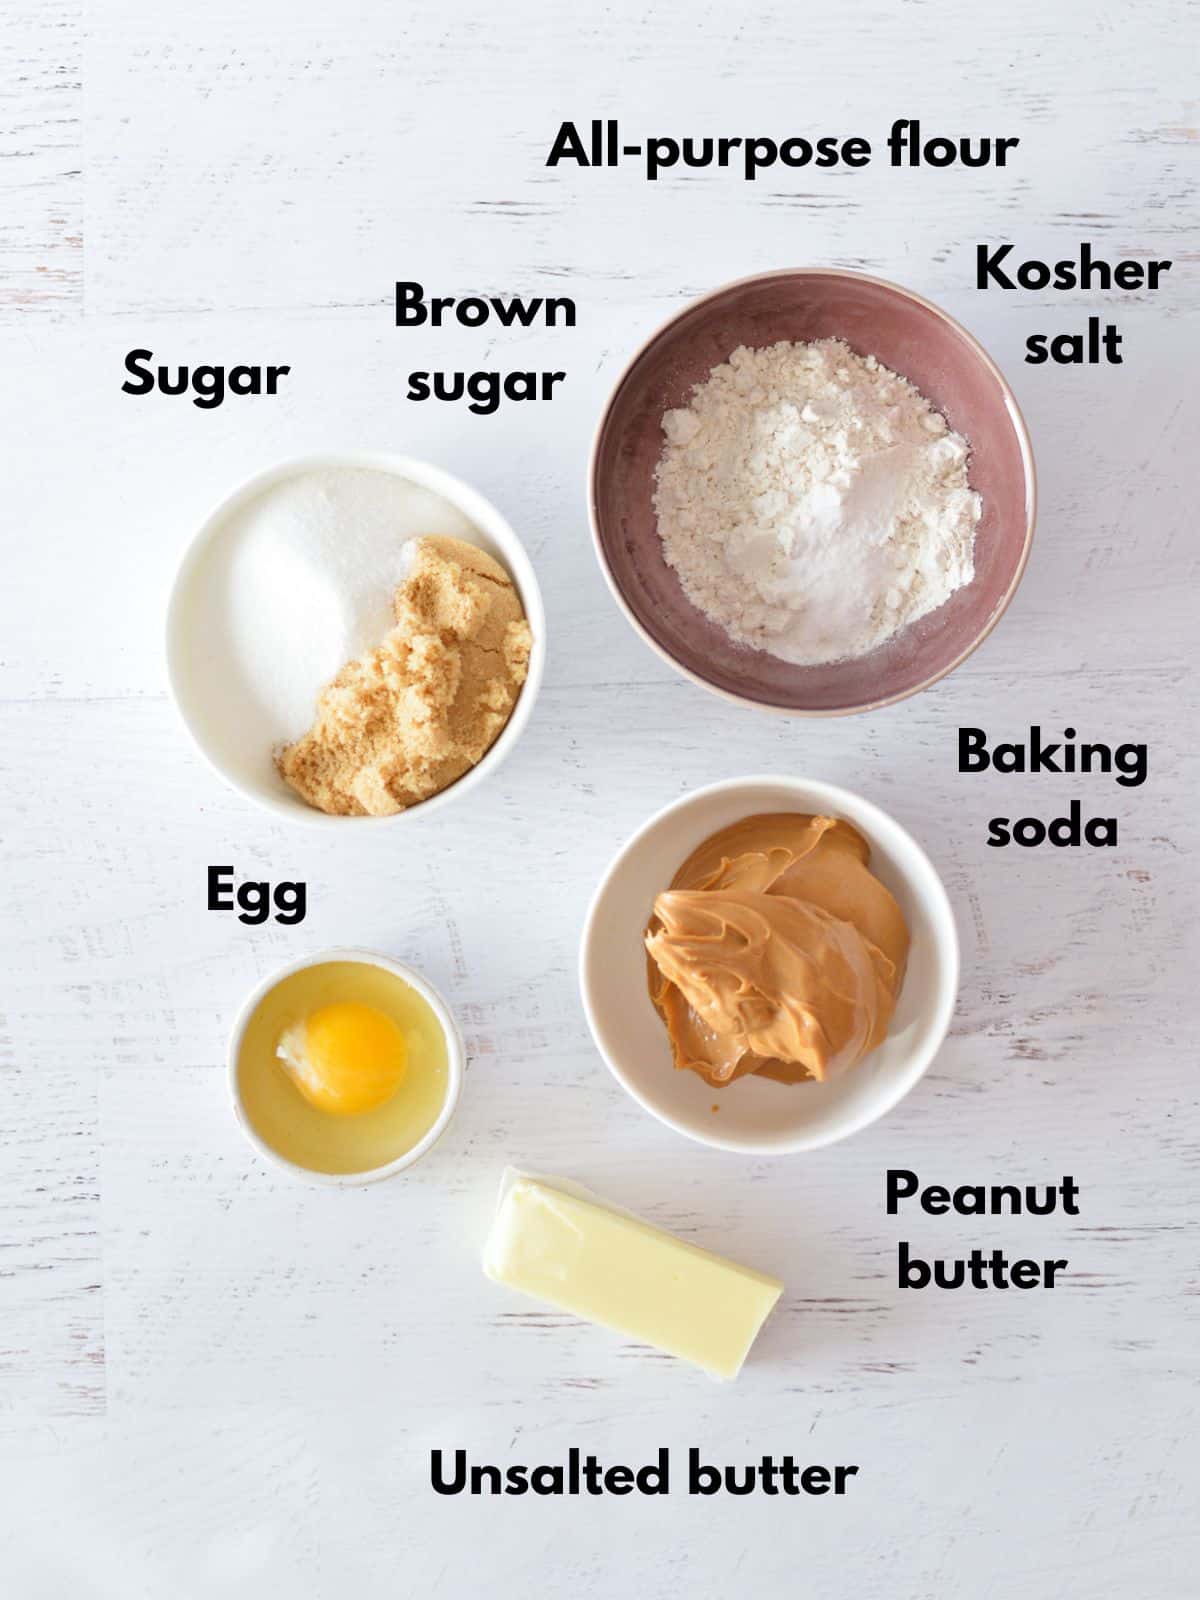 flour, sugar, egg, peanut butter, and butter.